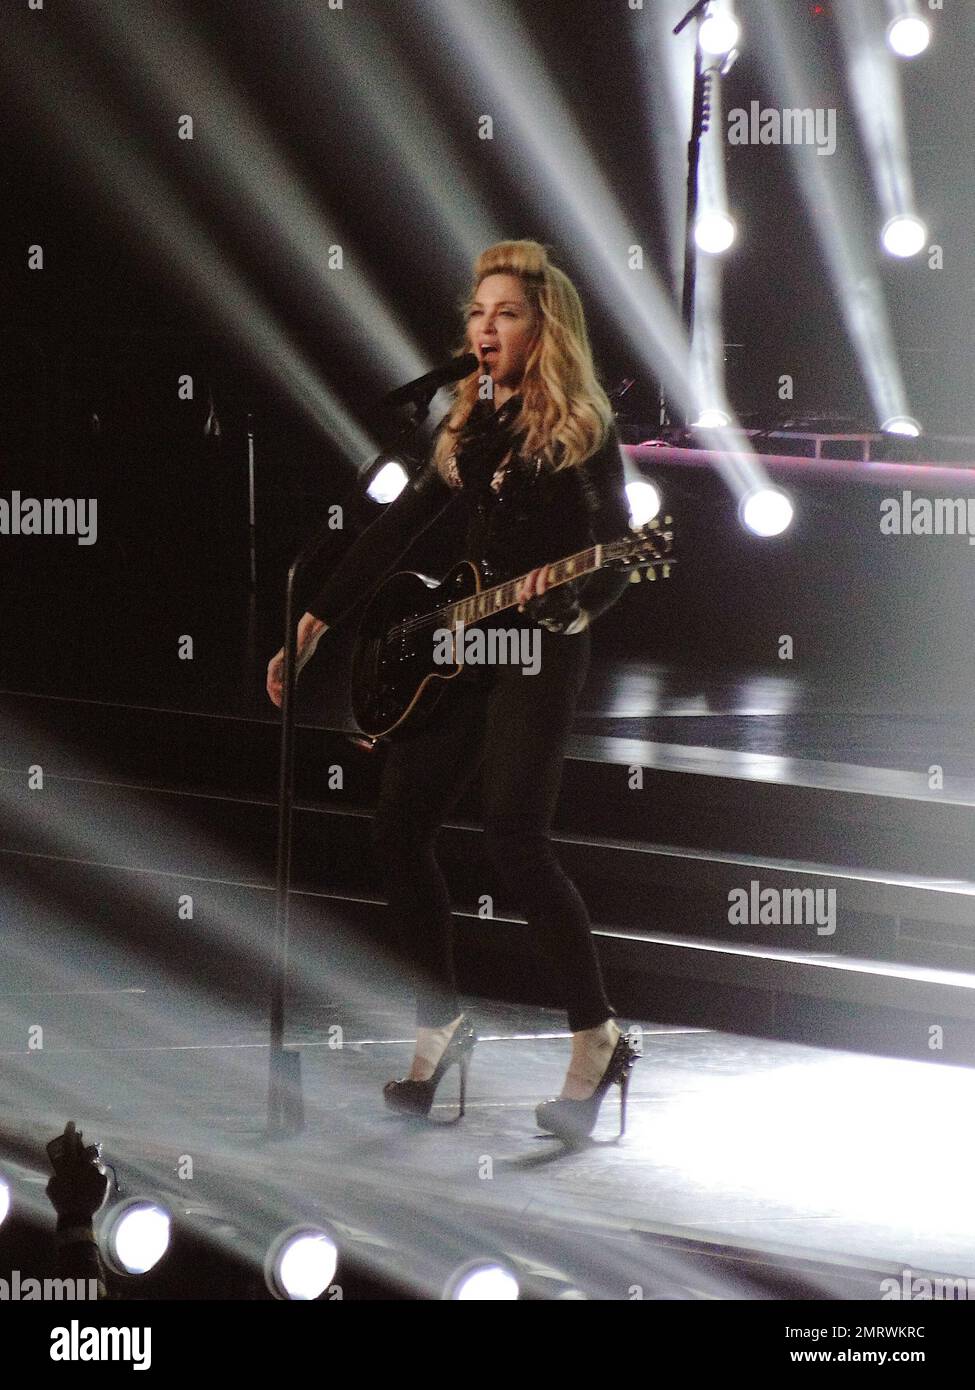 Madonna tritt während ihrer MDNA Tour im Staples Center live in einem Konzert auf. Während der Show Madonna spielte eine Reihe klassischer Lieder mit neueren Hits aus ihrem „MDNA“-Album und ihre Kostüme reichten von einem gefesselten Gefangenen, der von maskierten Milizen und einer Trommelmajorette begleitet wurde, bis hin zu einem klassischen, eleganten Look mit Hosen und Krawatte und einem maßgeschneiderten Korsett komplett mit dem ikonischen Kegel BH. An einem Punkt während der Show, entblößte Madonna ihren mit Fischnetz verkleideten Hintern vor Publikum. Damit war Madonnas erste von zwei LA-Darbietungen, die Tour, die bisher kontrovers war, mit berichteten offenbaren B. Stockfoto